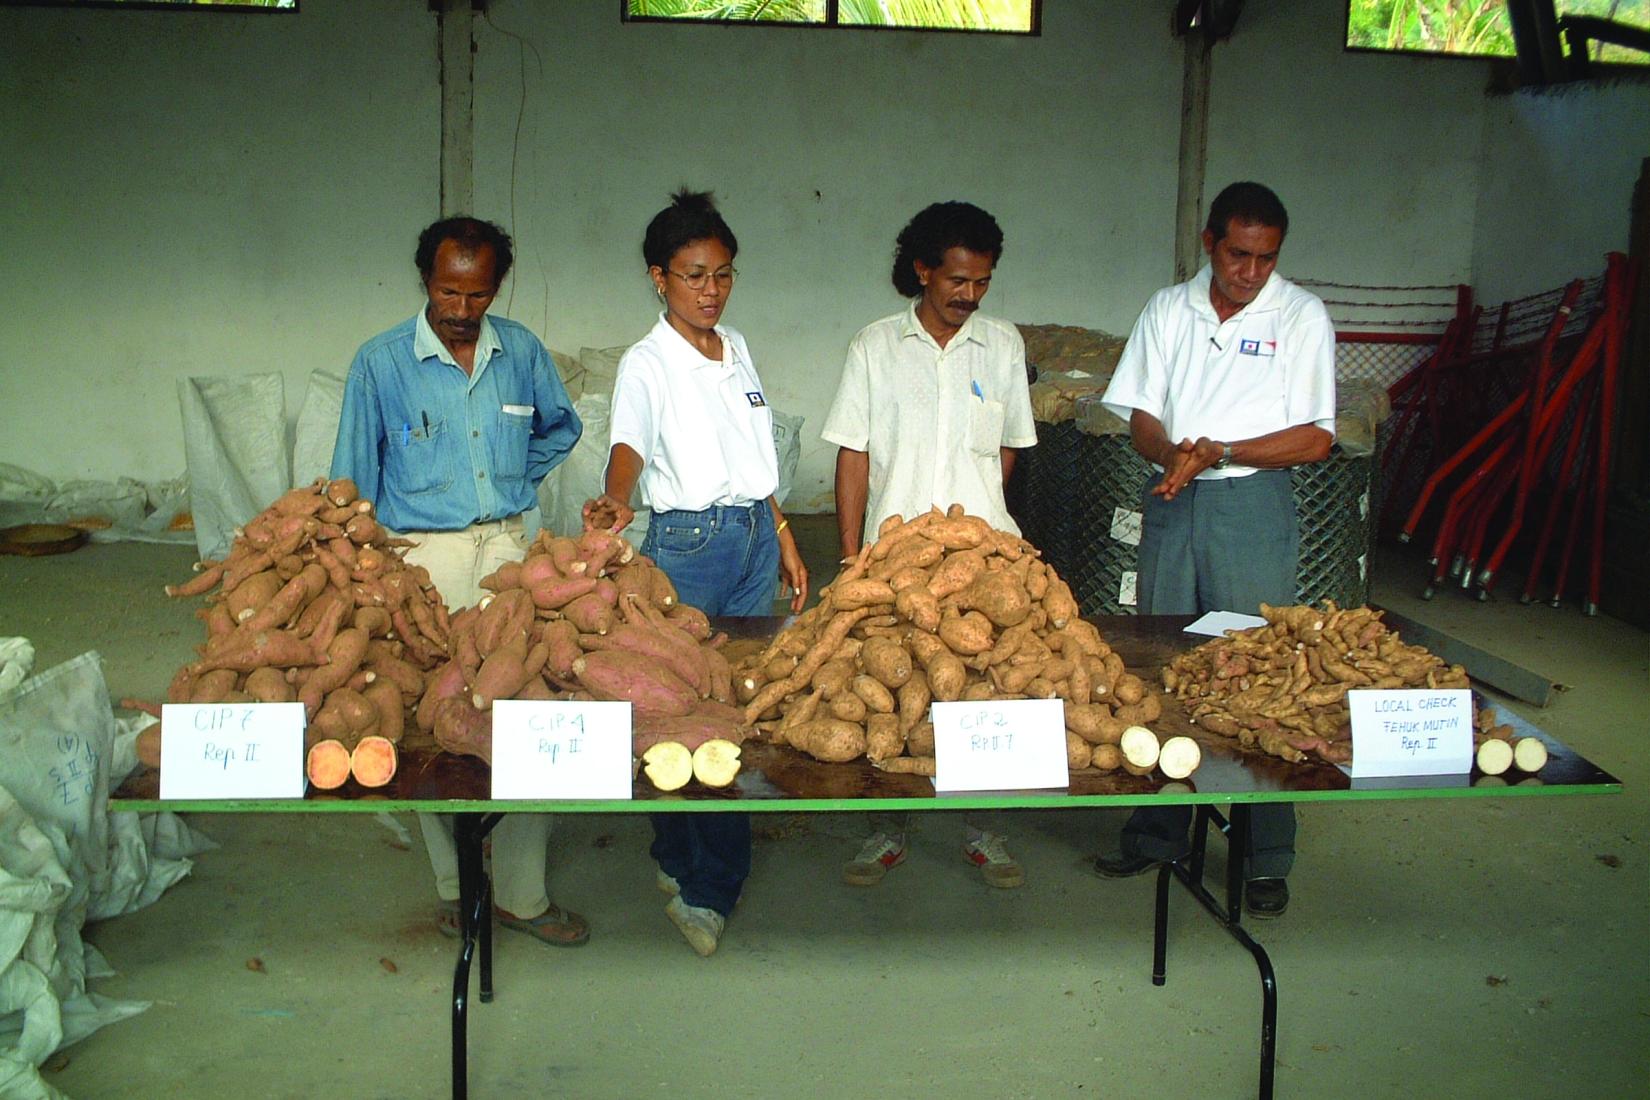 Timor-Leste Sweet Potato tasting in 2004 in Maliana.